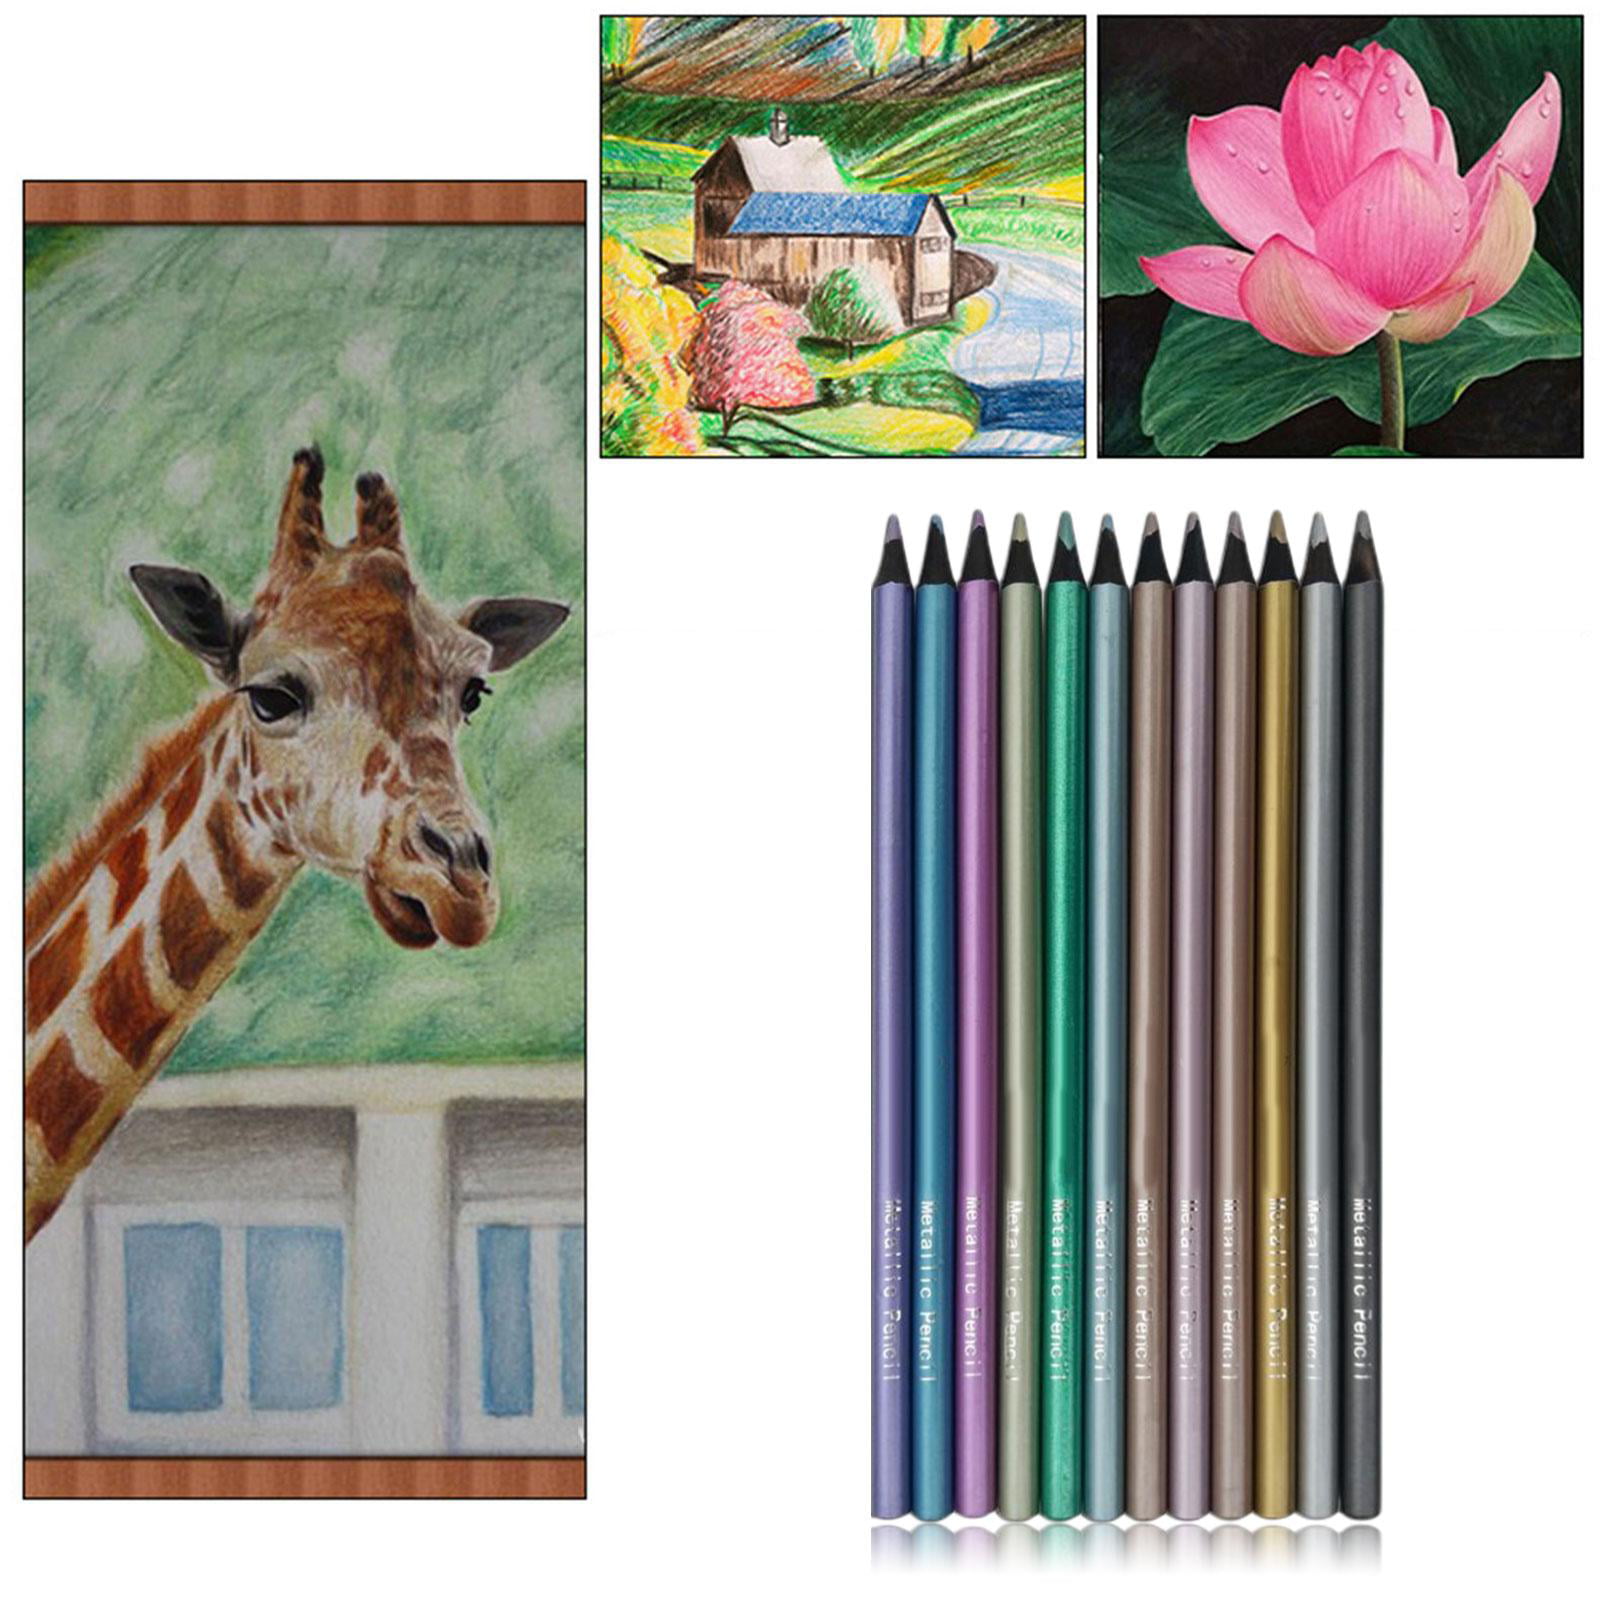 Sketching Pencils,Casewin 12pcs Drawing Pencils Professional Set